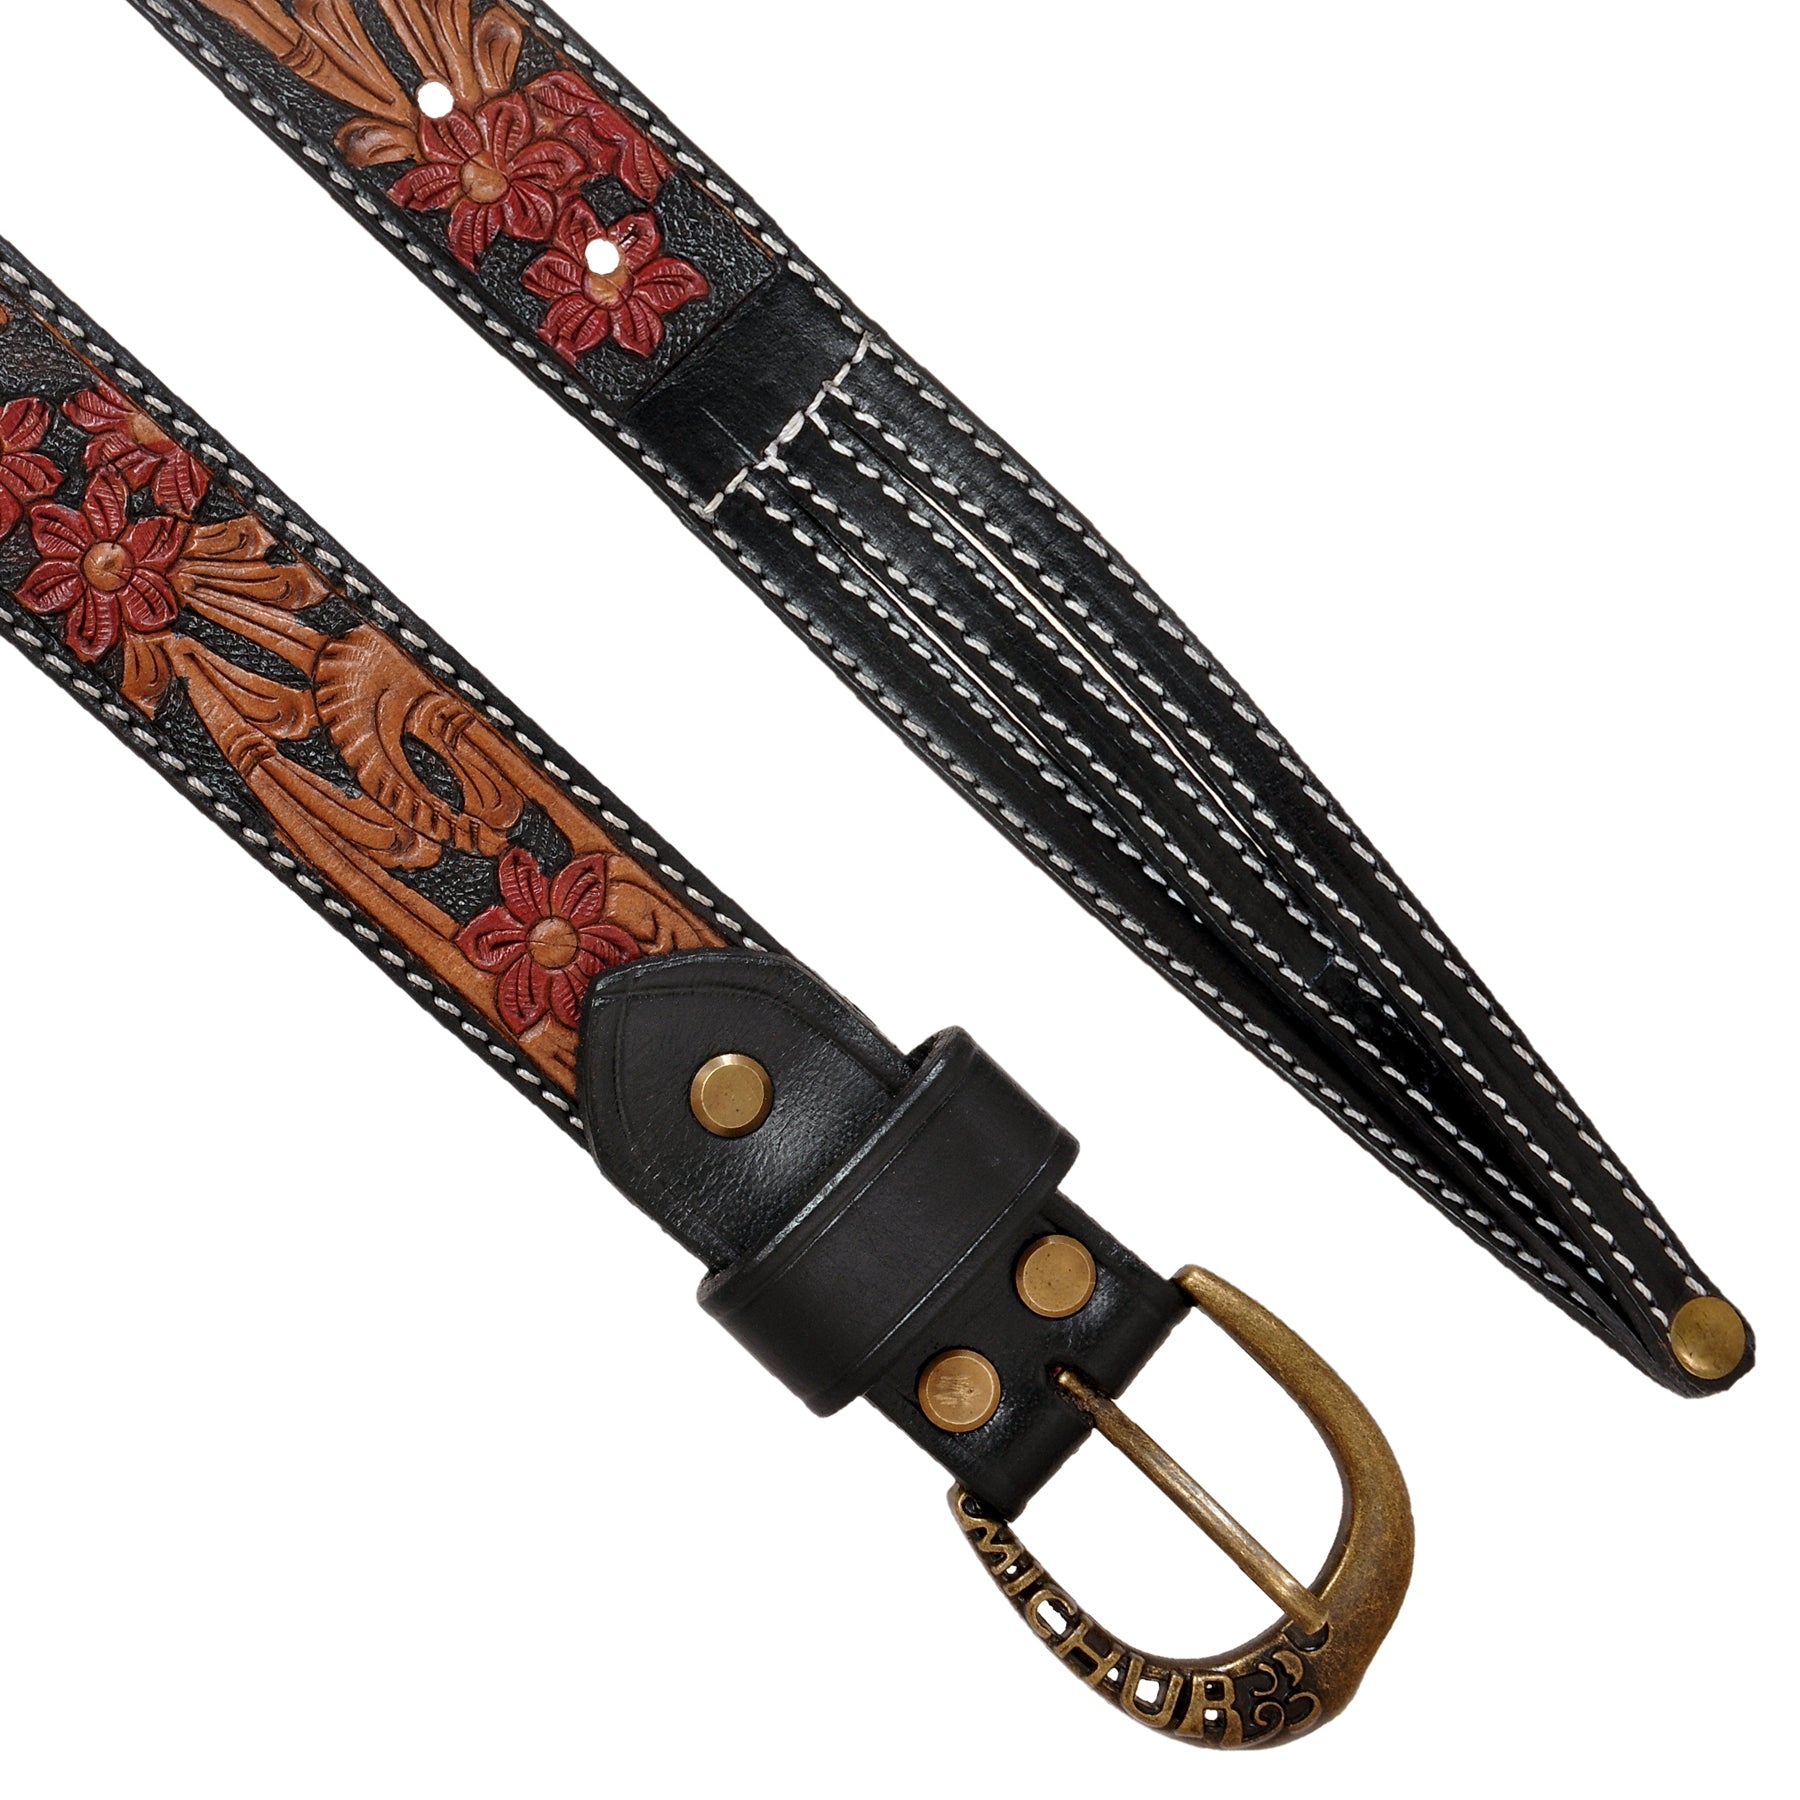 Flora women's belt